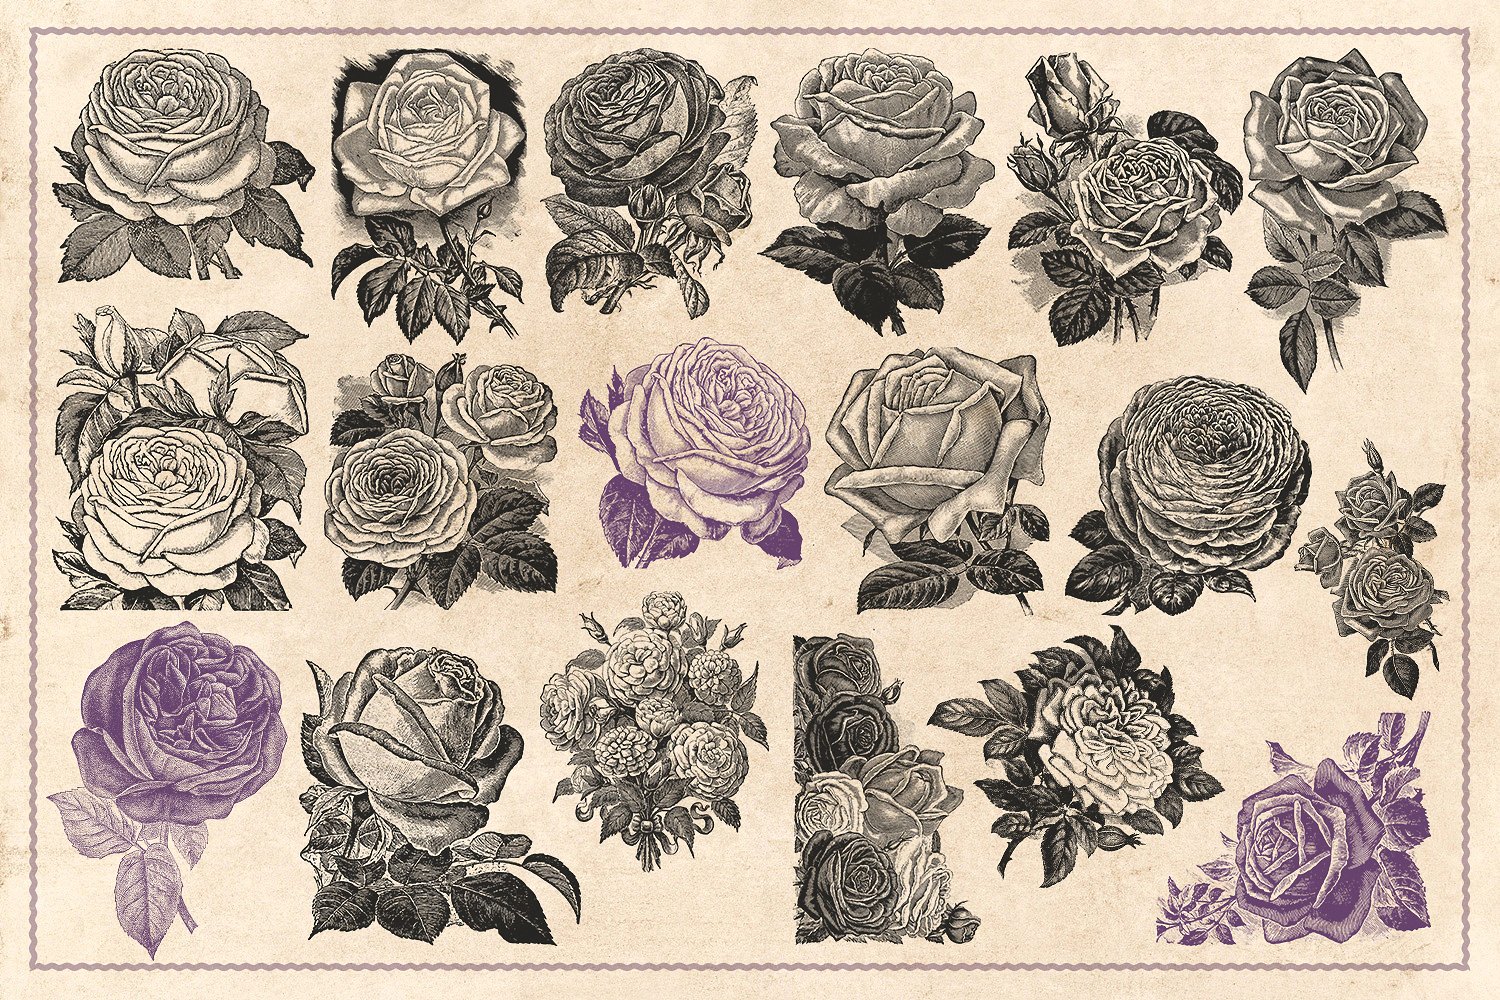 70款手绘怀旧风格的玫瑰花矢量素材下载[eps,png]插图(5)